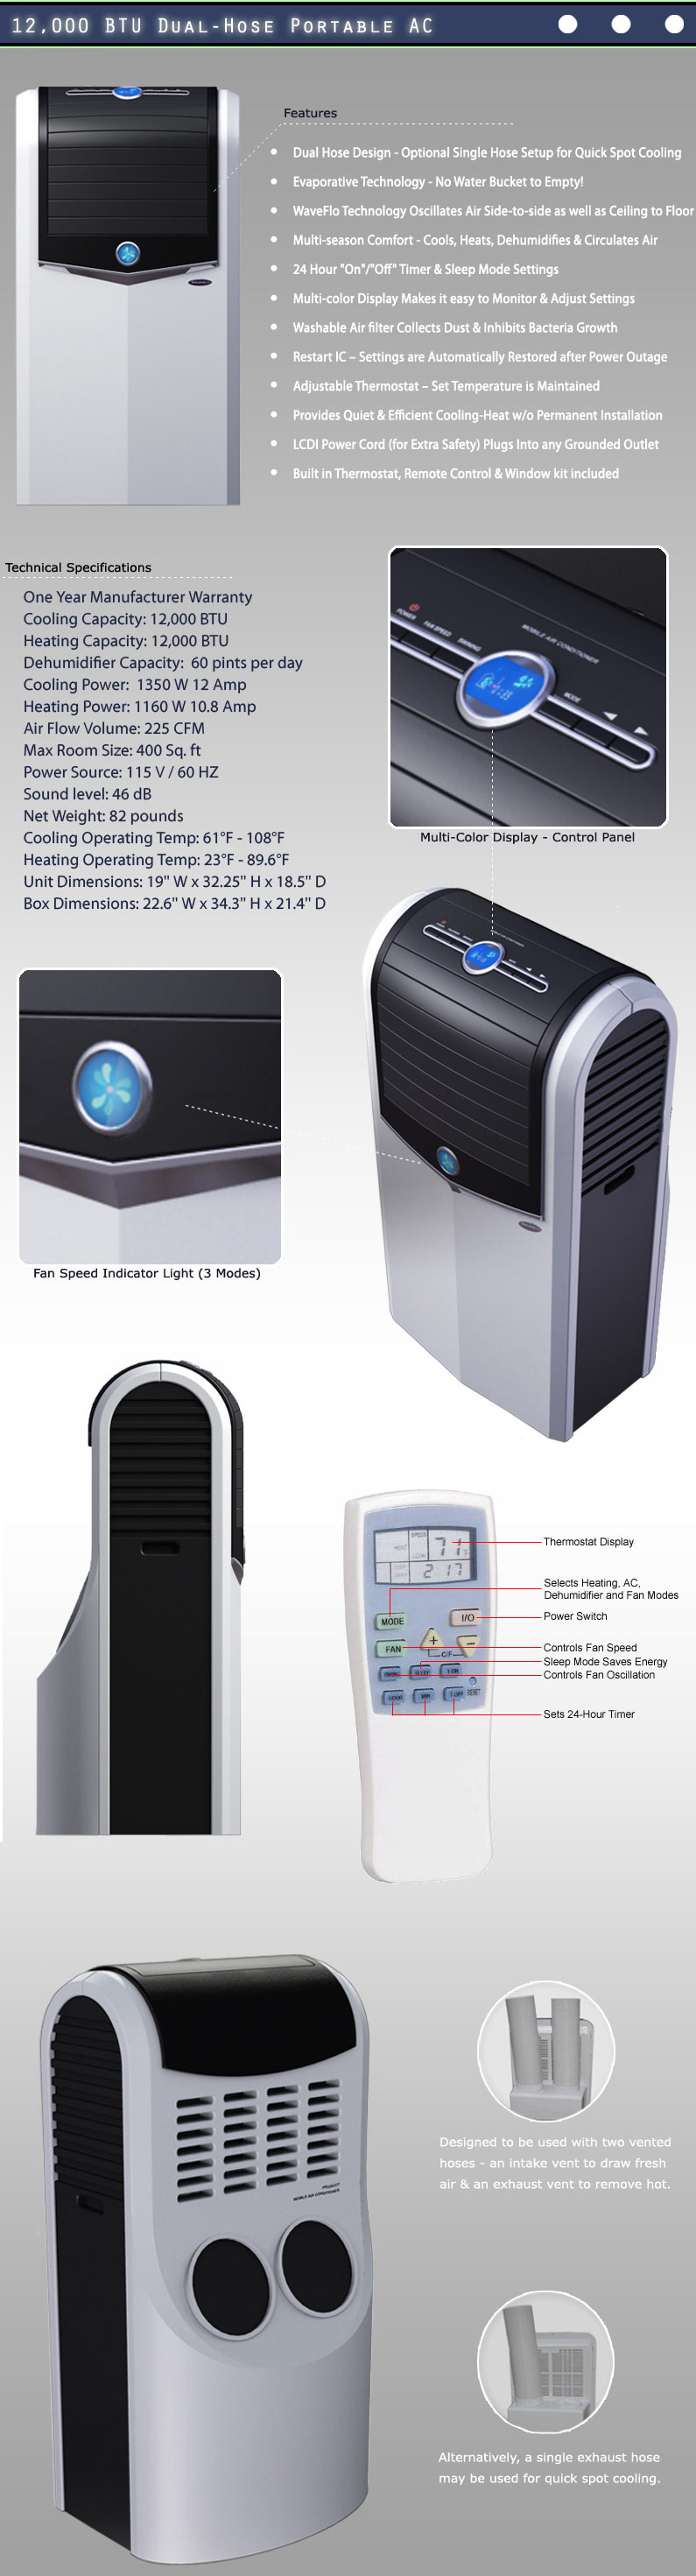 Portable Air Conditioner - Soleus LX150